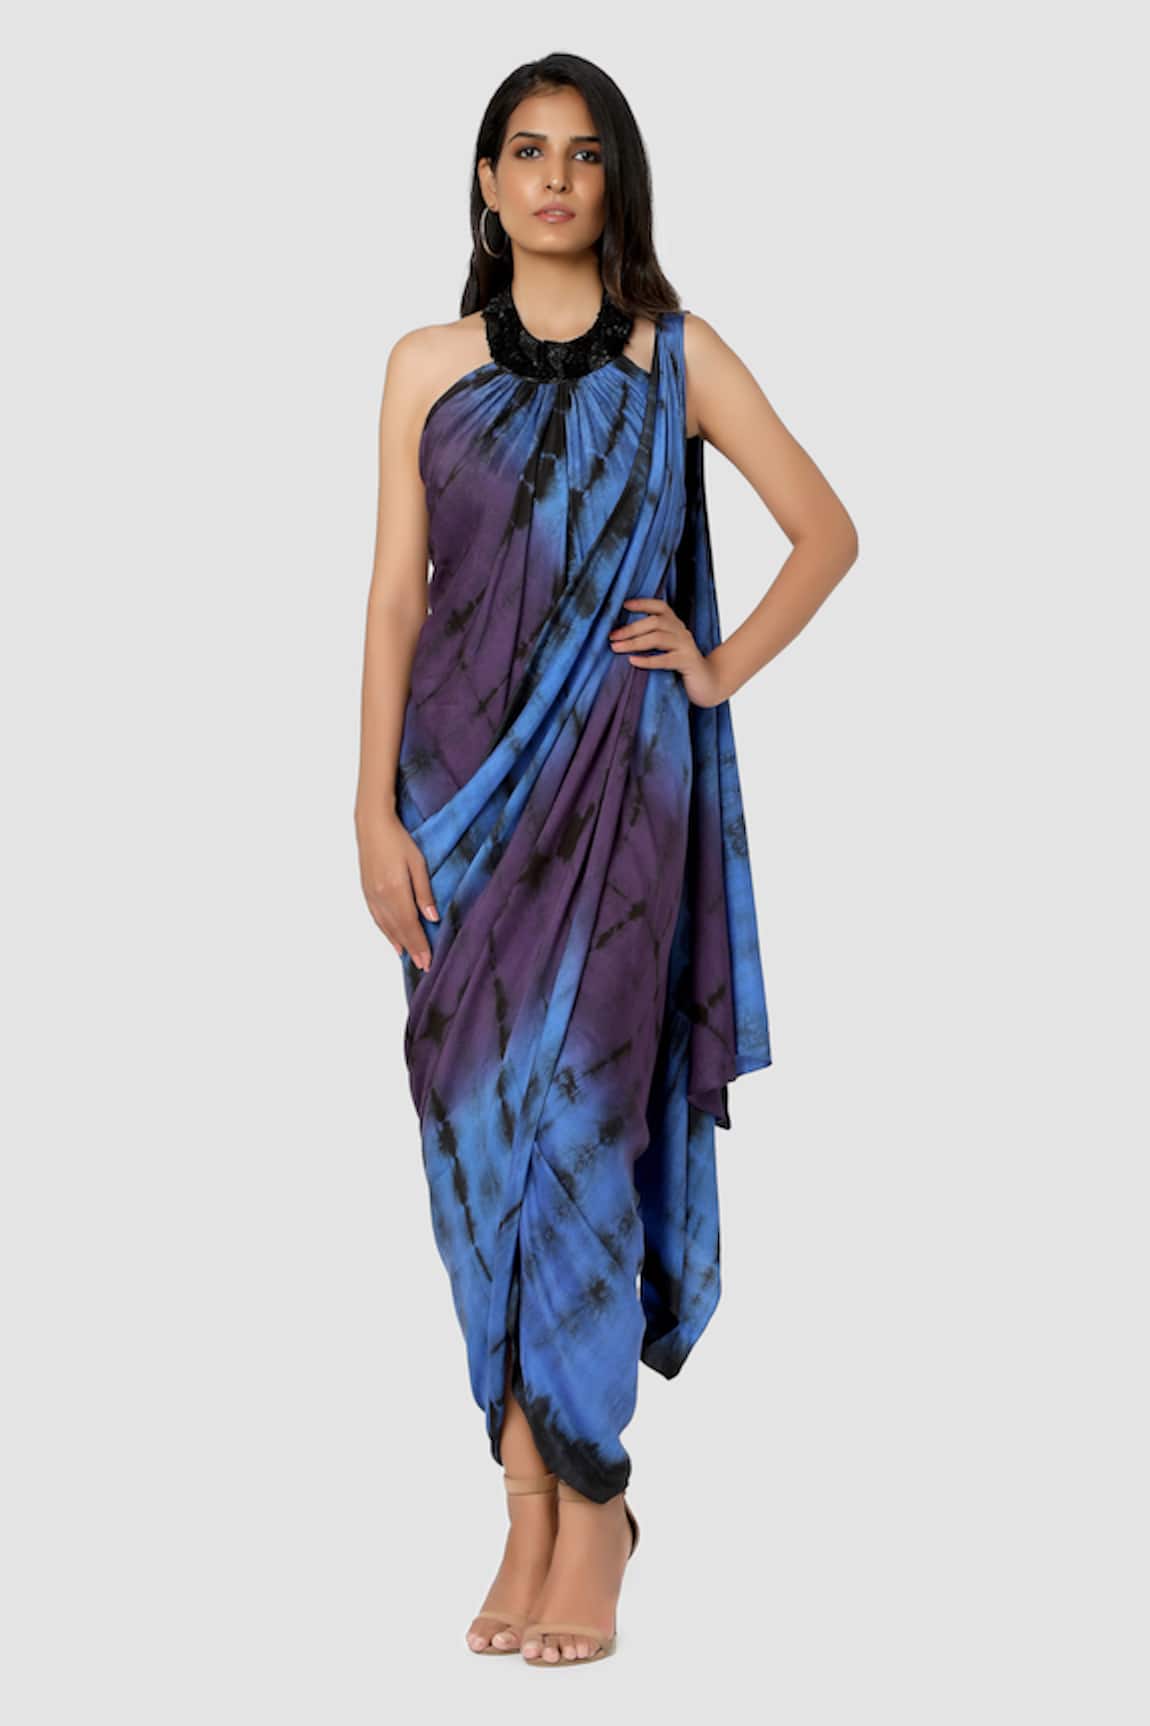 Babita Malkani Organic Draped Tie Dye Saree Gown 